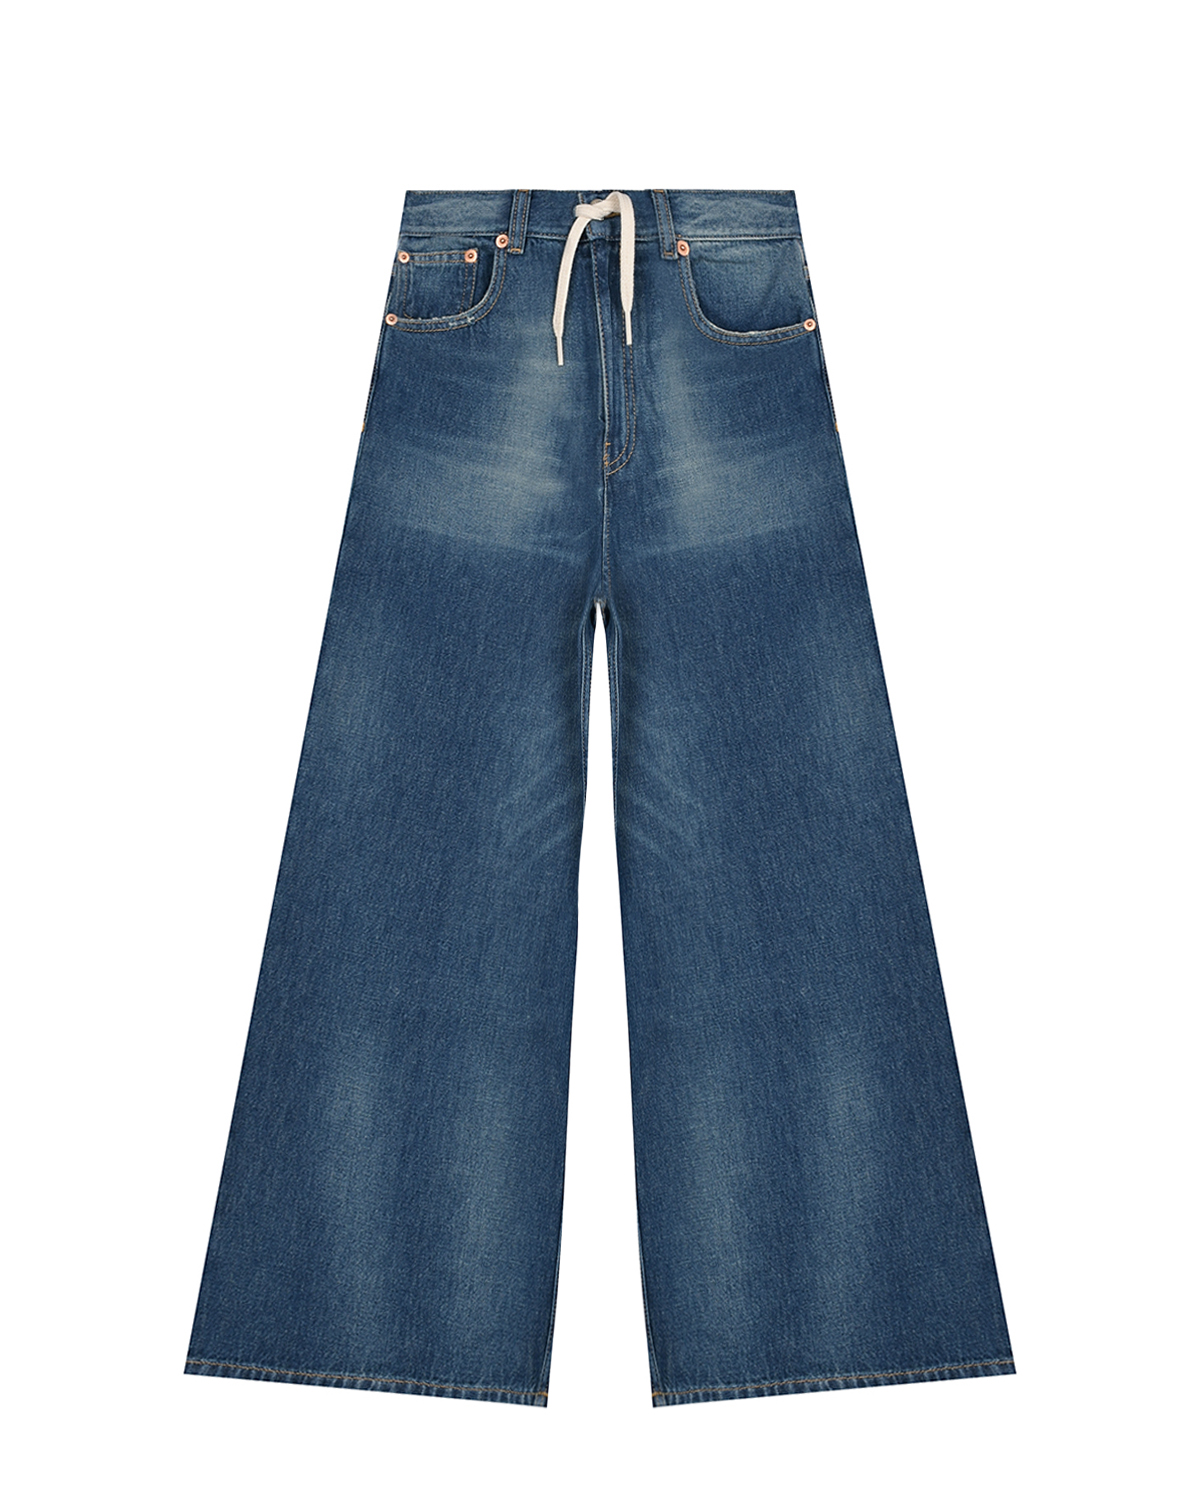 Синие джинсы с поясом на кулиске MM6 Maison Margiela детские